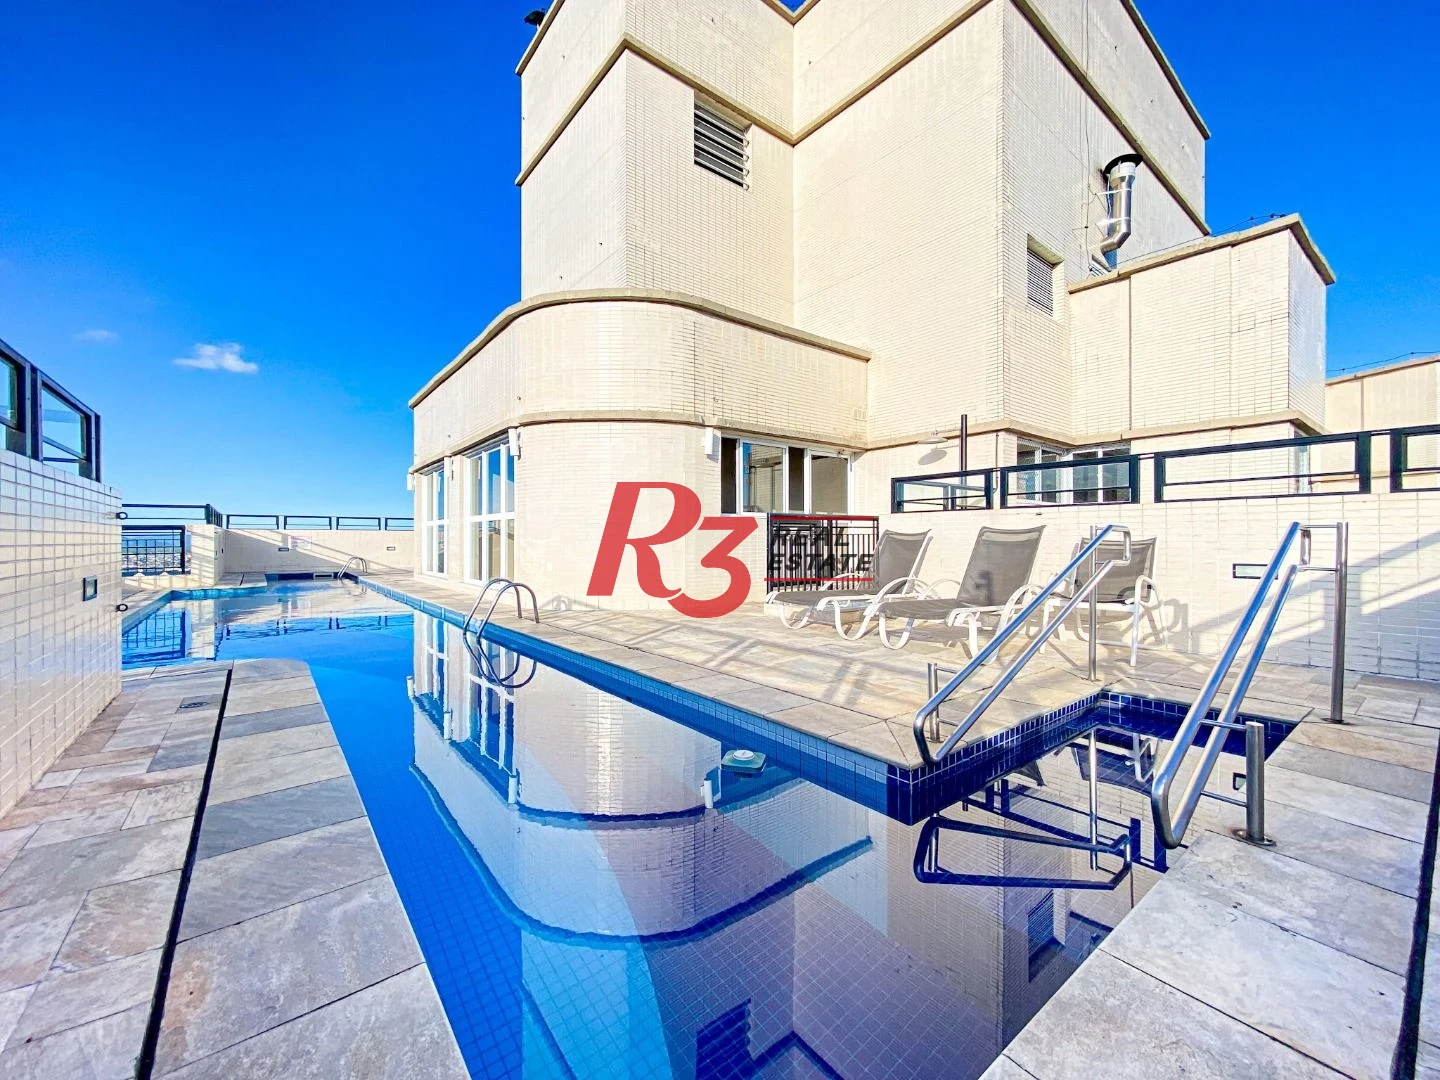 Apartamento com 2 dormitórios para alugar, 90 m² por R$ 6.000,02/mês - Gonzaga - Santos/SP